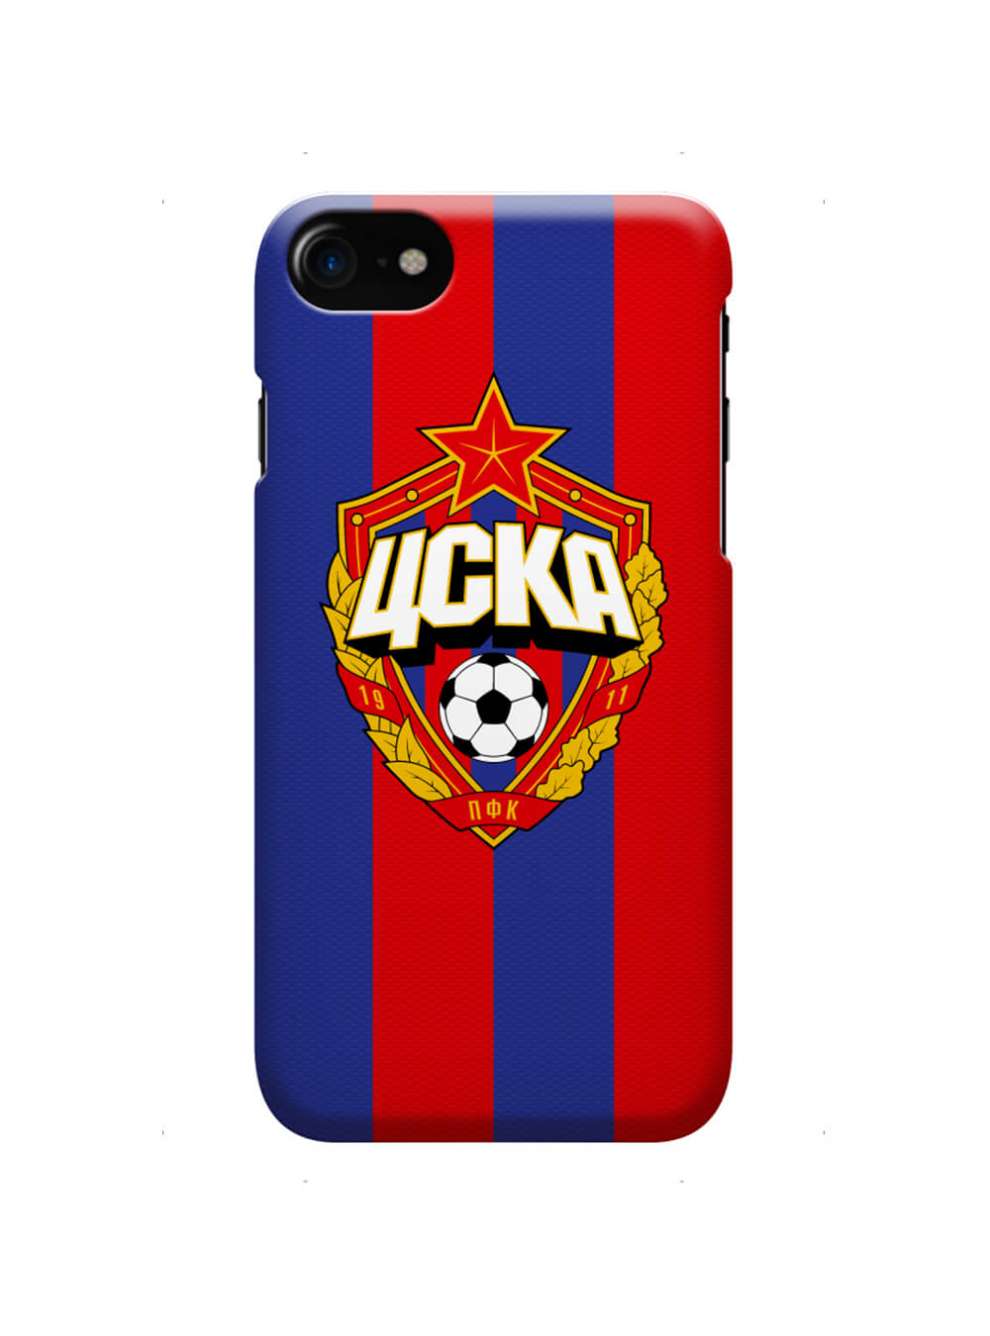 Клип-кейс для iPhone с объемной эмблемой ПФК ЦСКА, цвет красно-синий (IPhone 6 Plus)